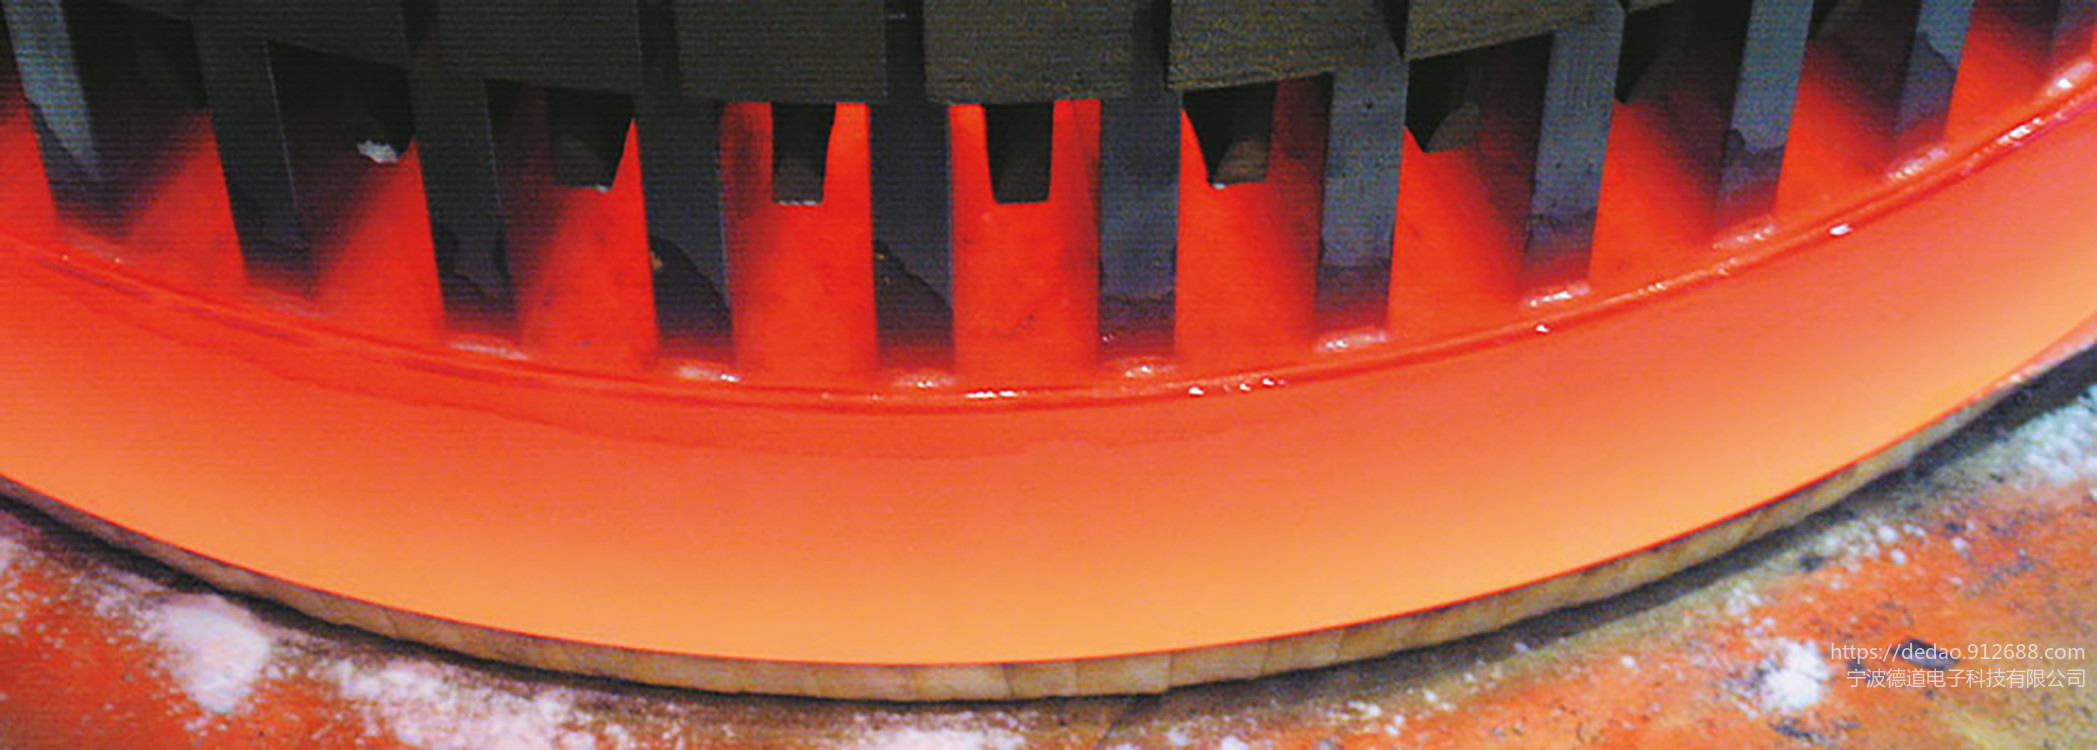 研通高频高频驱动高频焊头高频焊锡图片